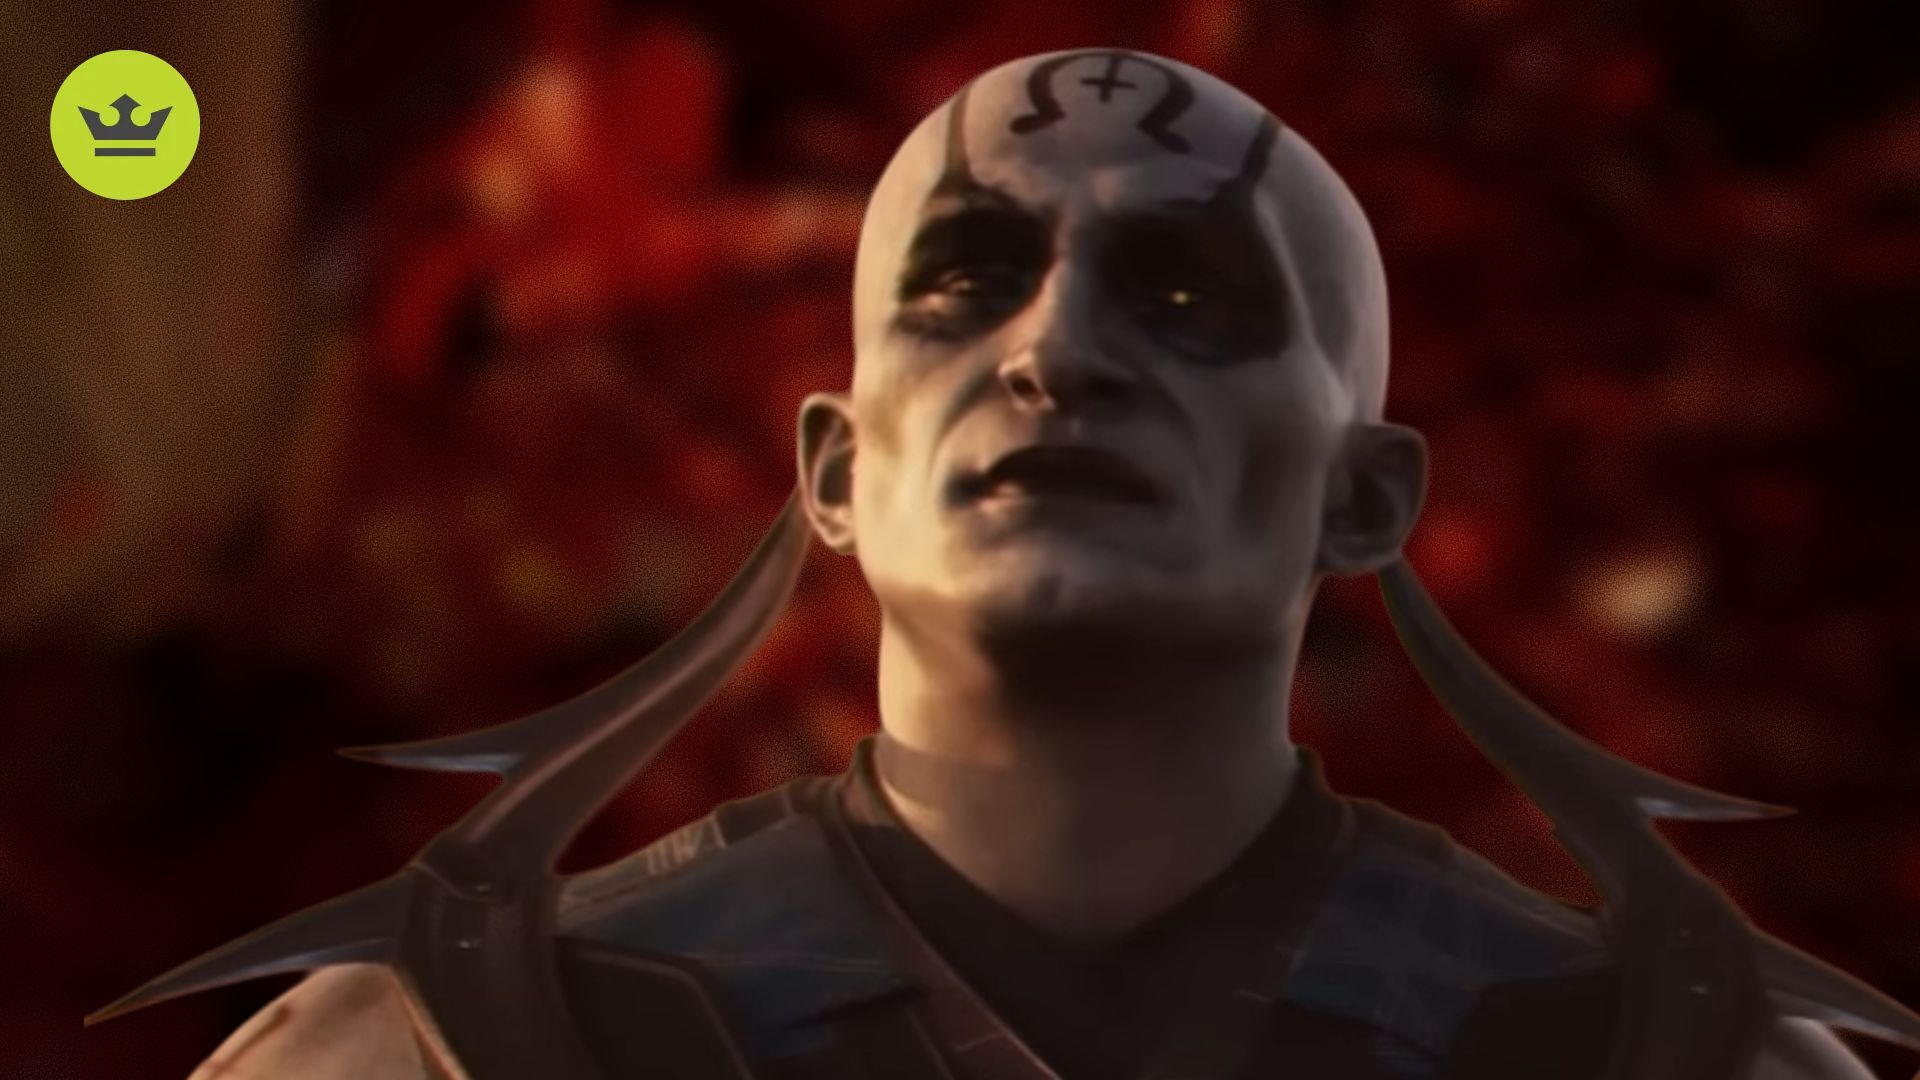 Mortal Kombat 1 Characters: Quan-Chi can be seen